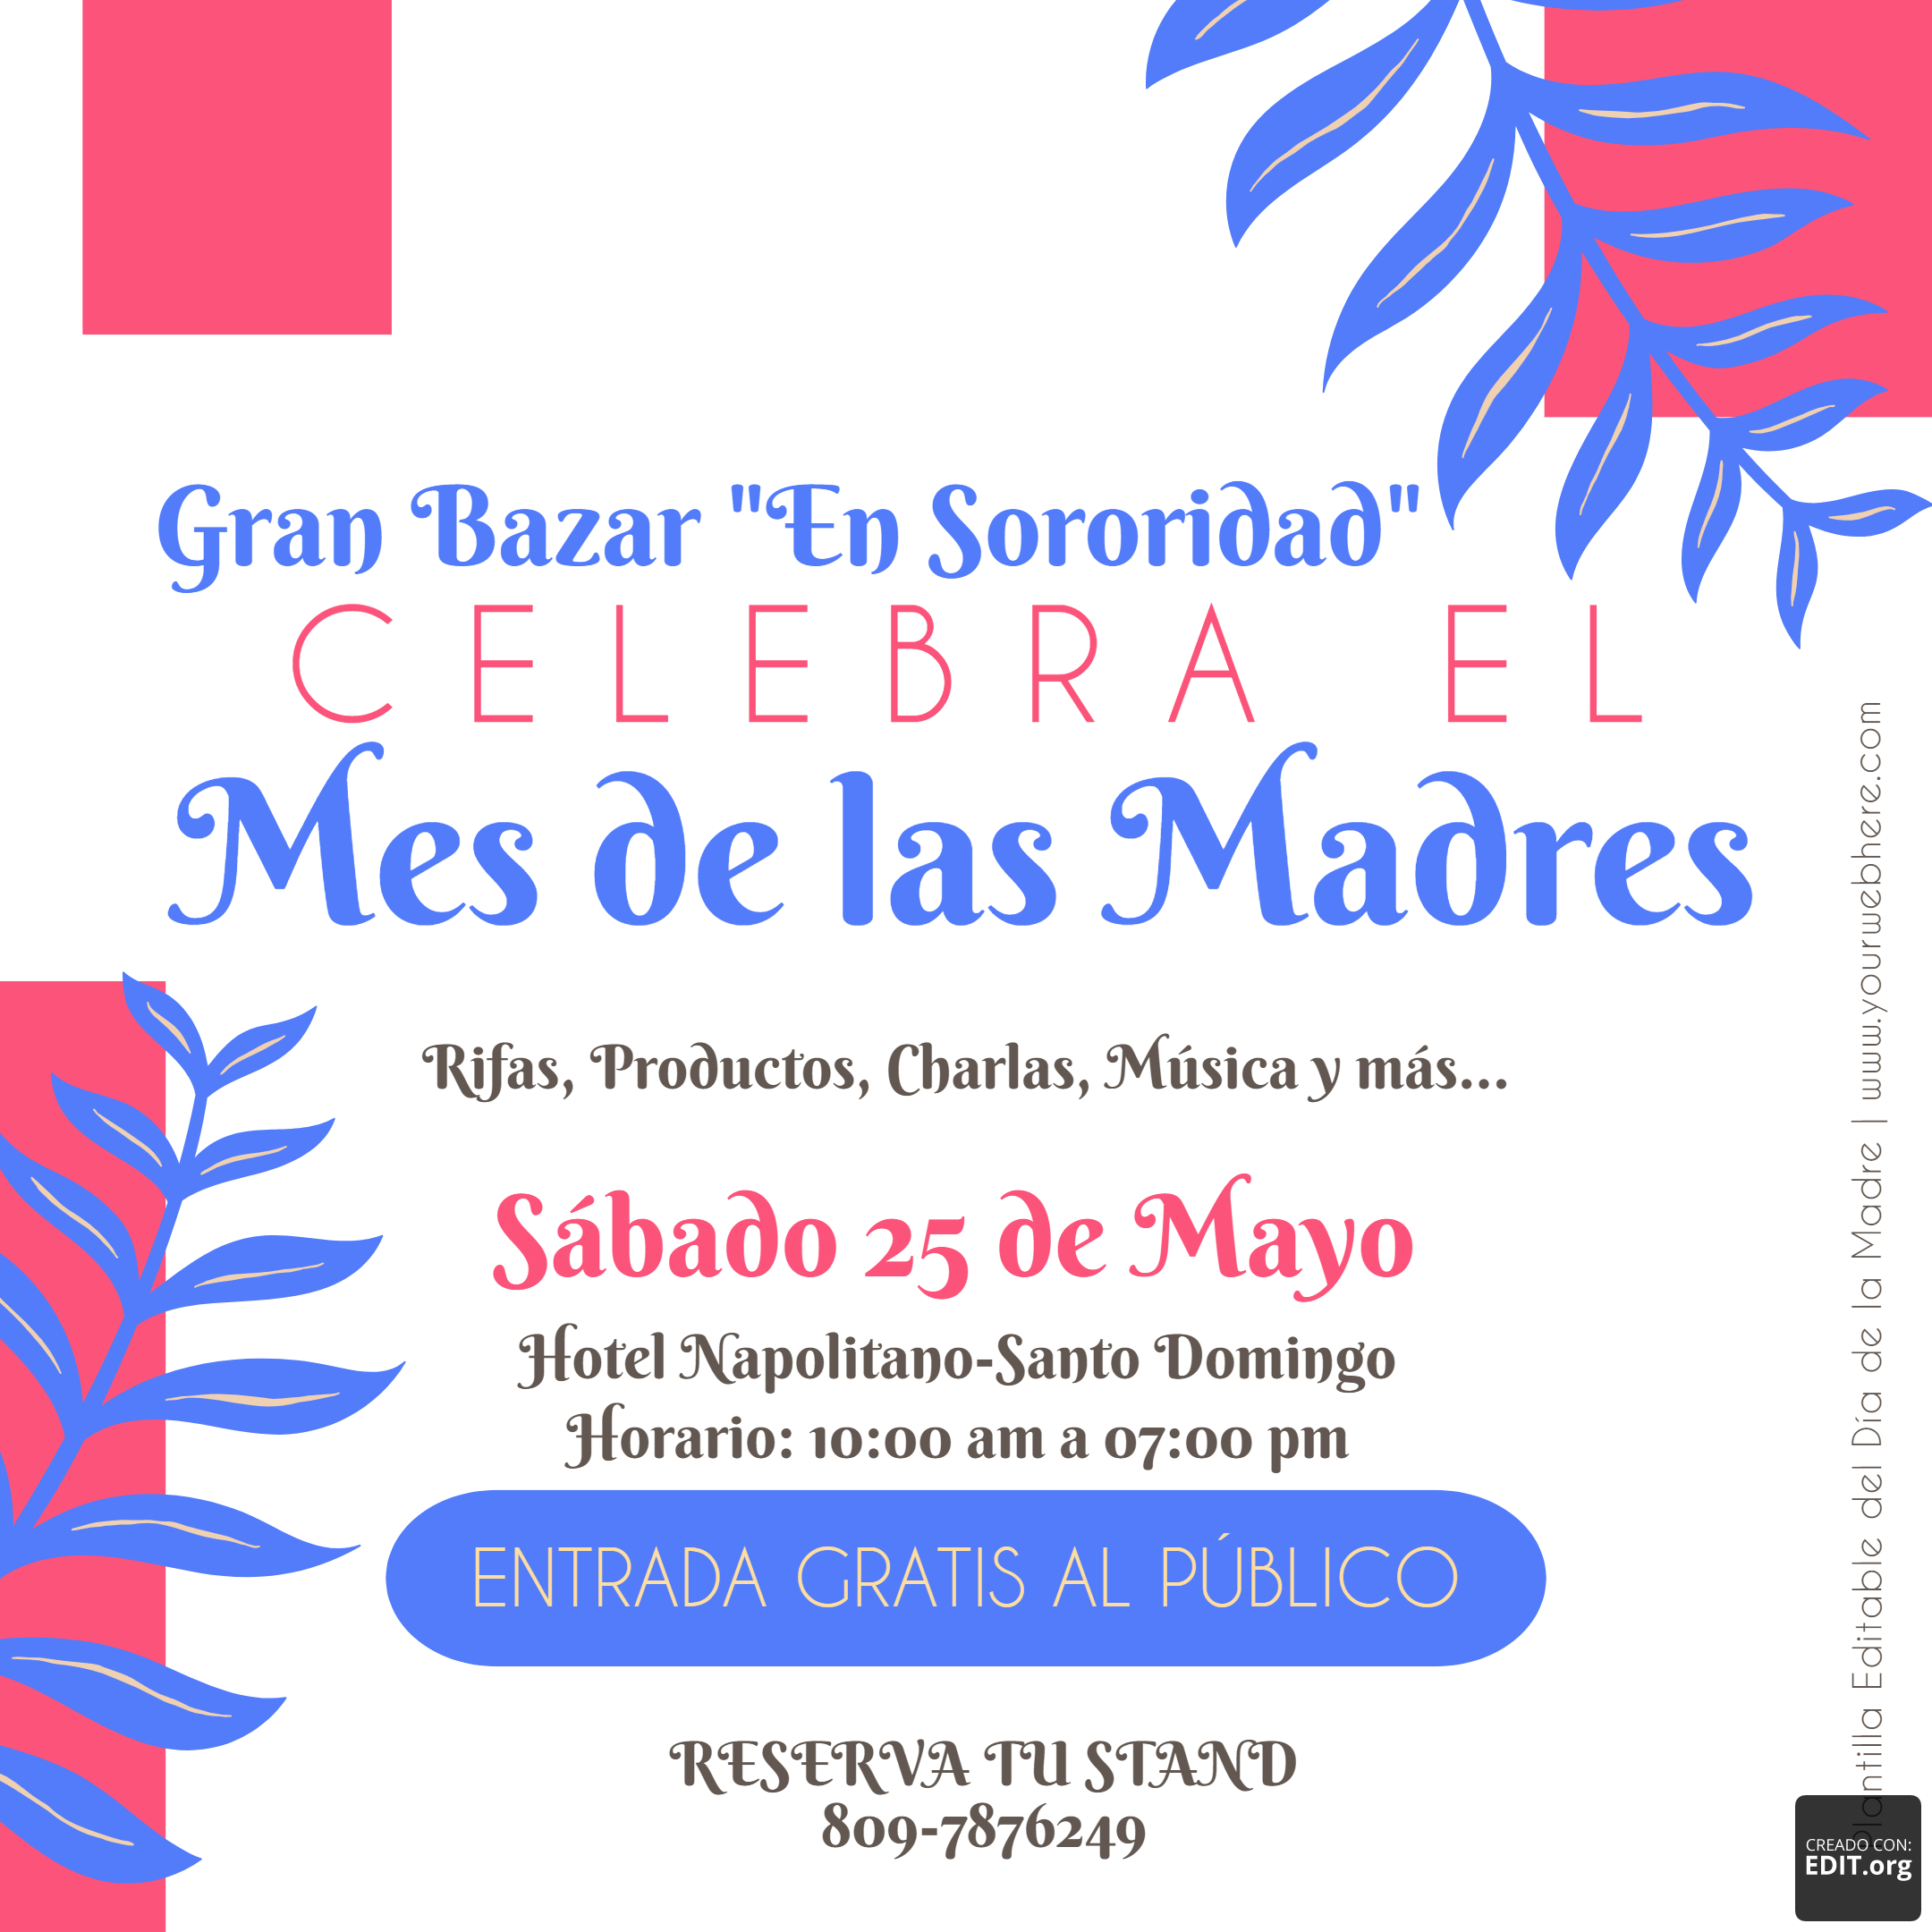 Met2Het2 International anuncia el Bazar “En Sororidad” festejando el mes de las Madres